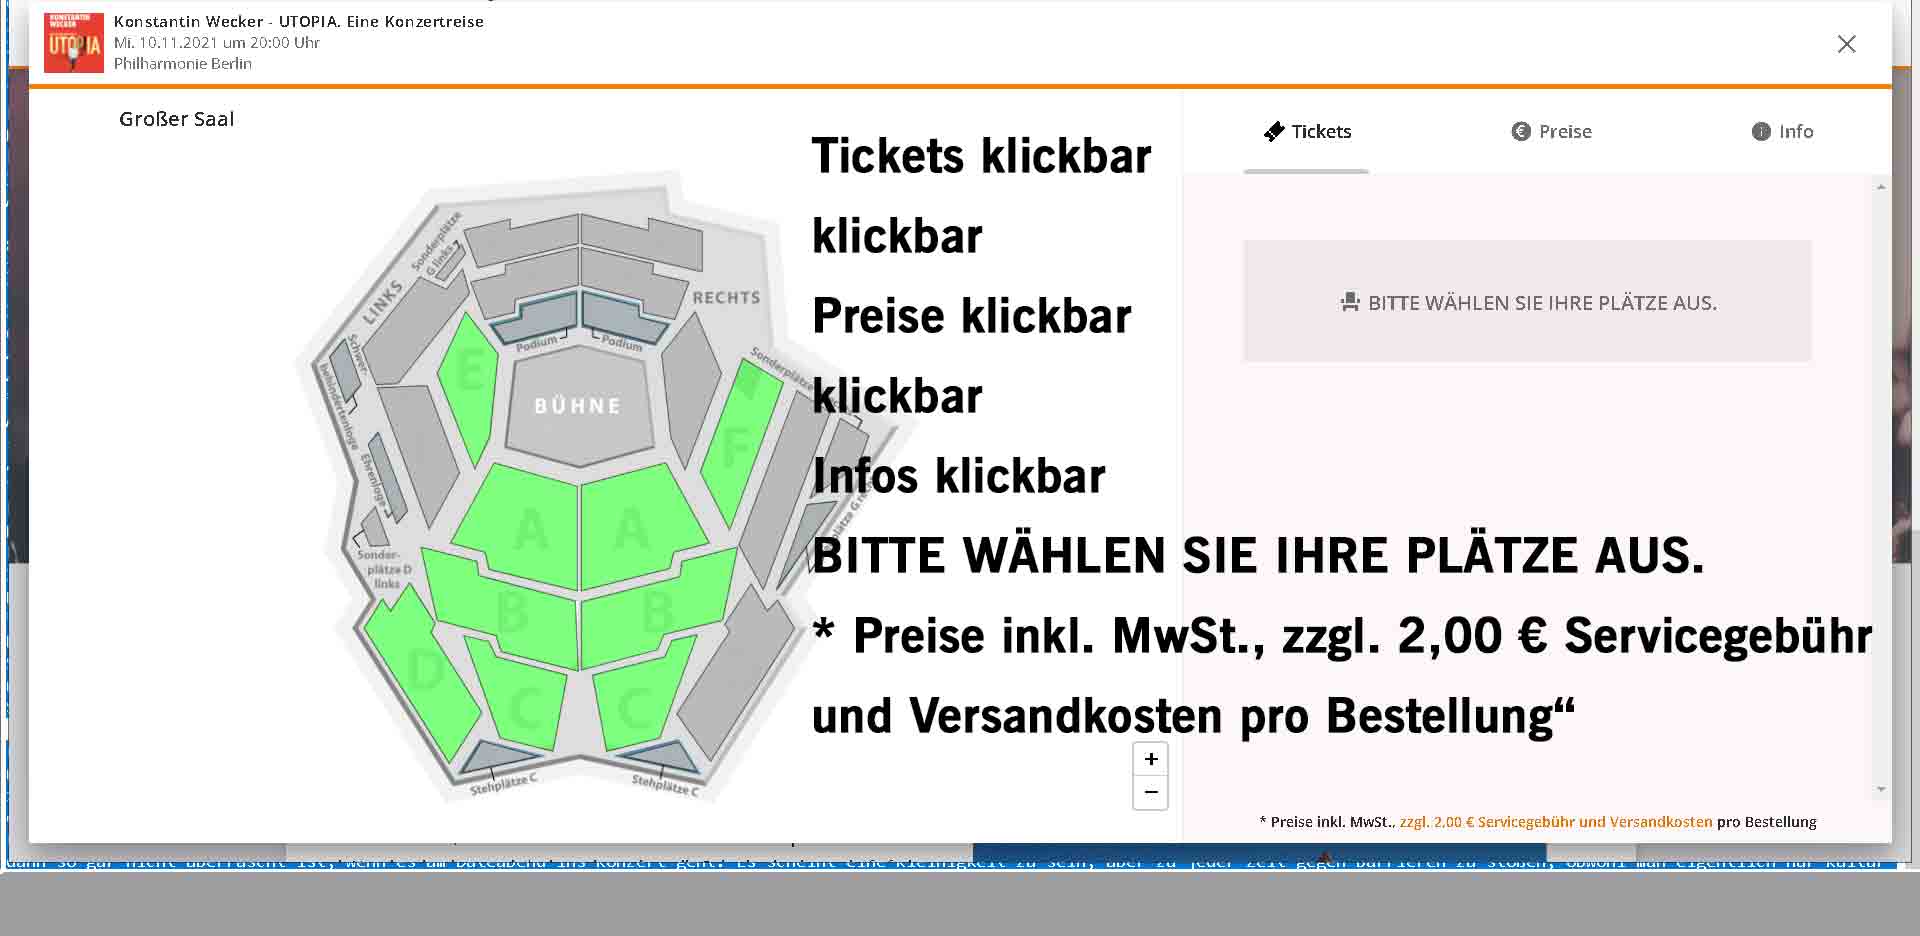 Ticketing mit Screen Reader: Auf der Reservix-Seite zum Ticketkauf ist der Text des Screenreaders in schwarzer großer Schrift in die Bildmitte gesetzt.